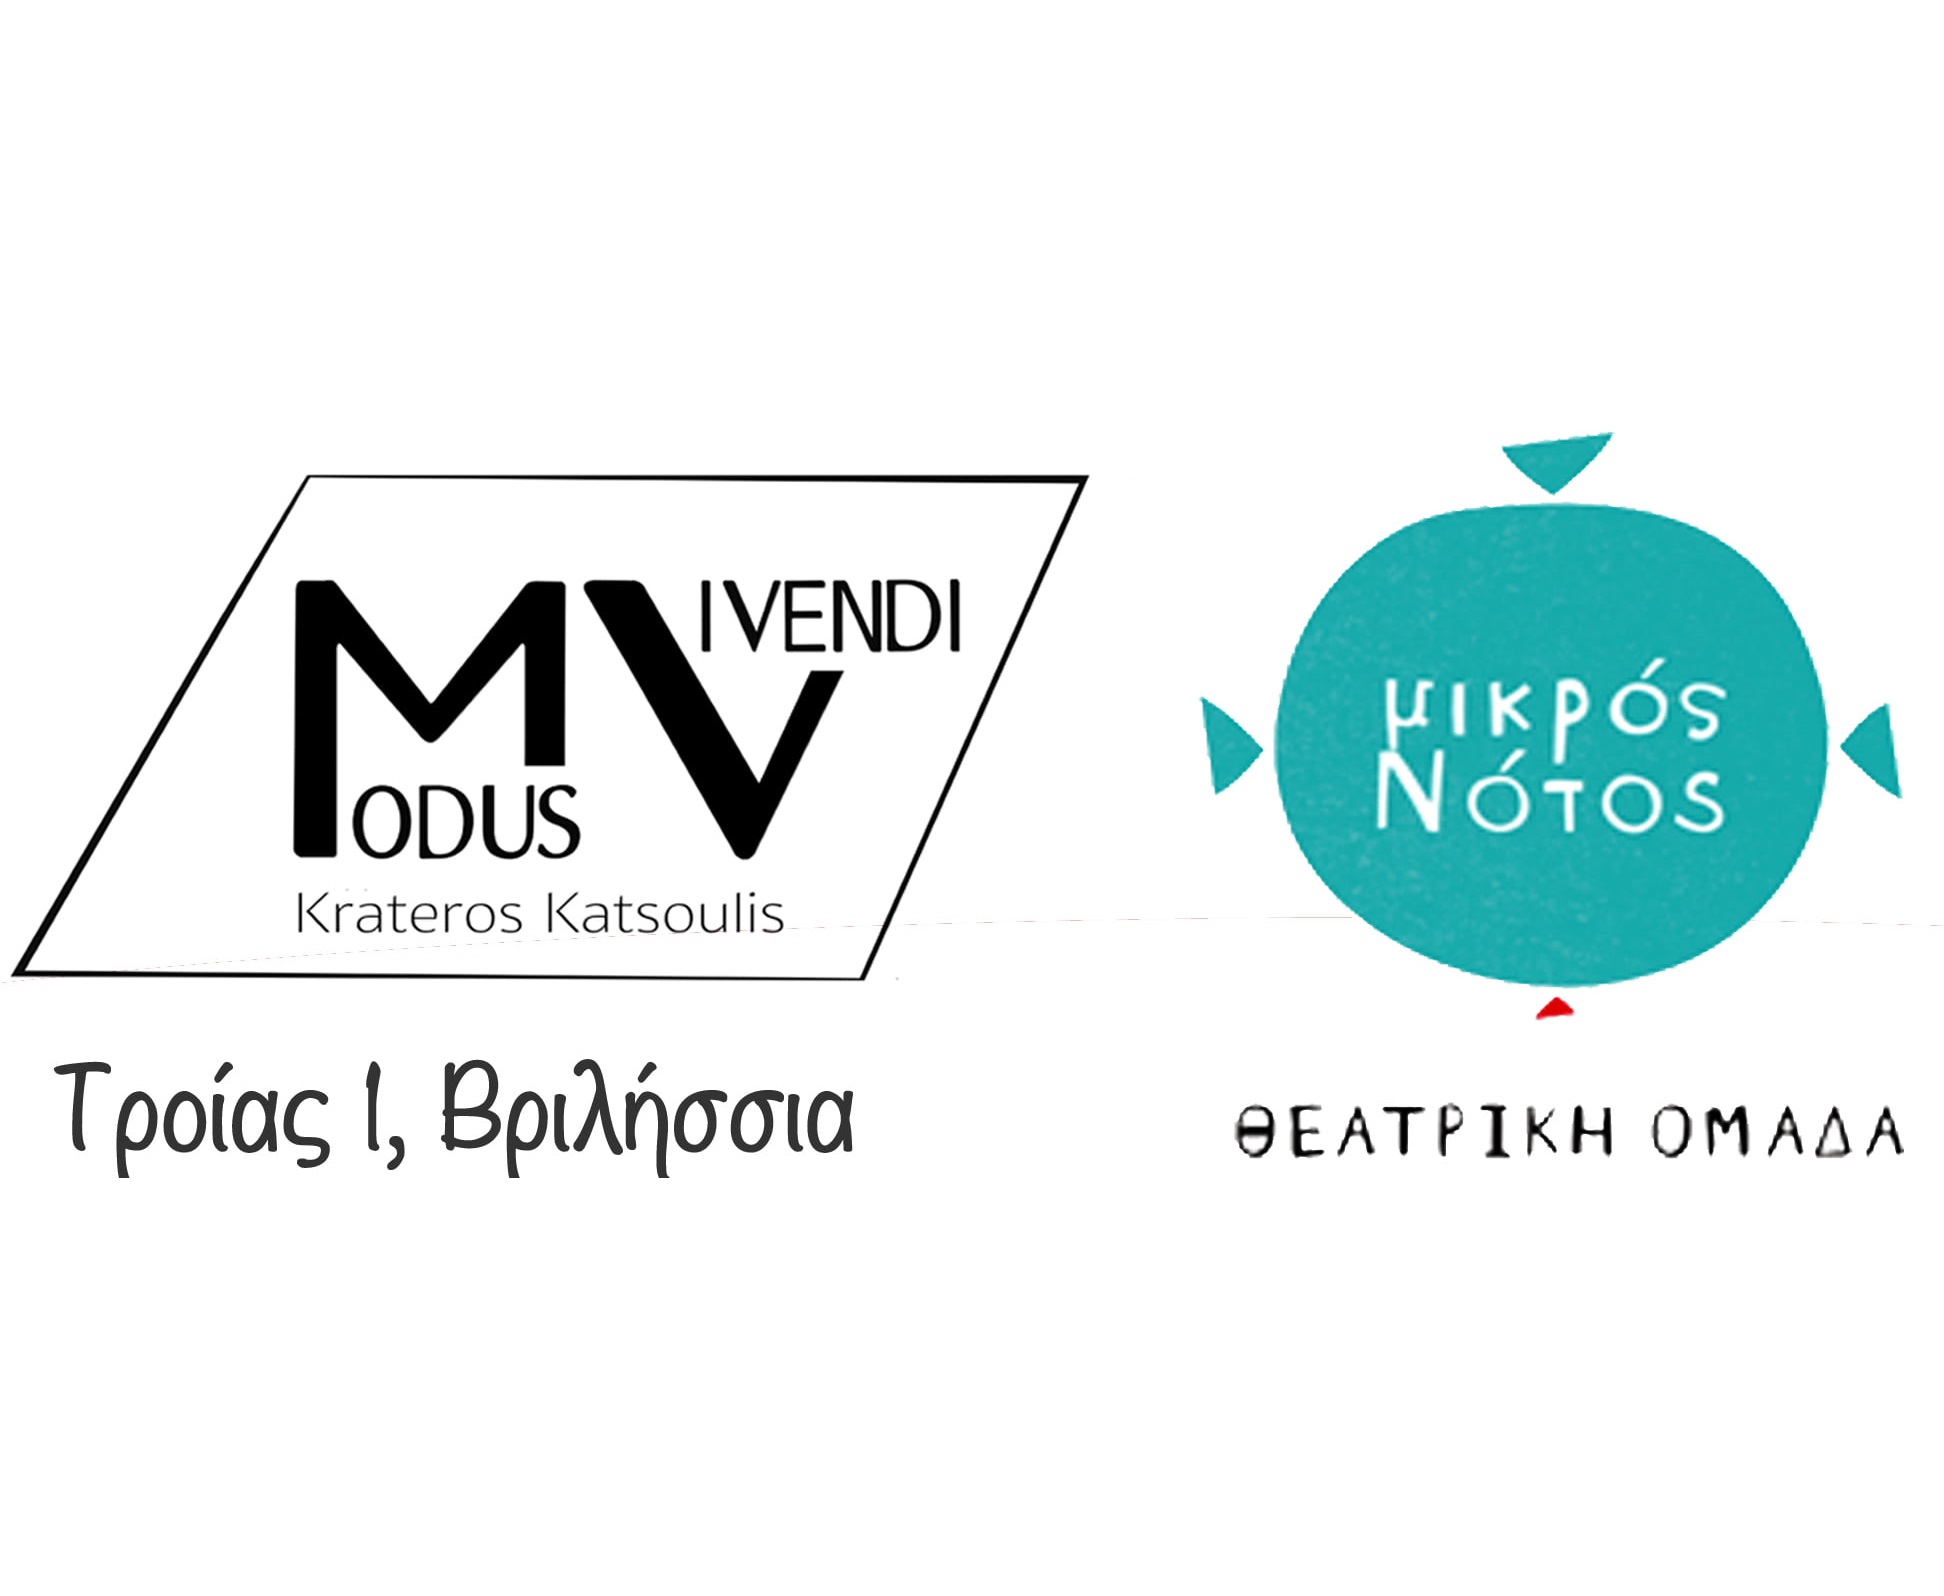 Εργαστήρια από Μικρός Νότος στο Mudus Vivendi by Krateros Katsoulis logo